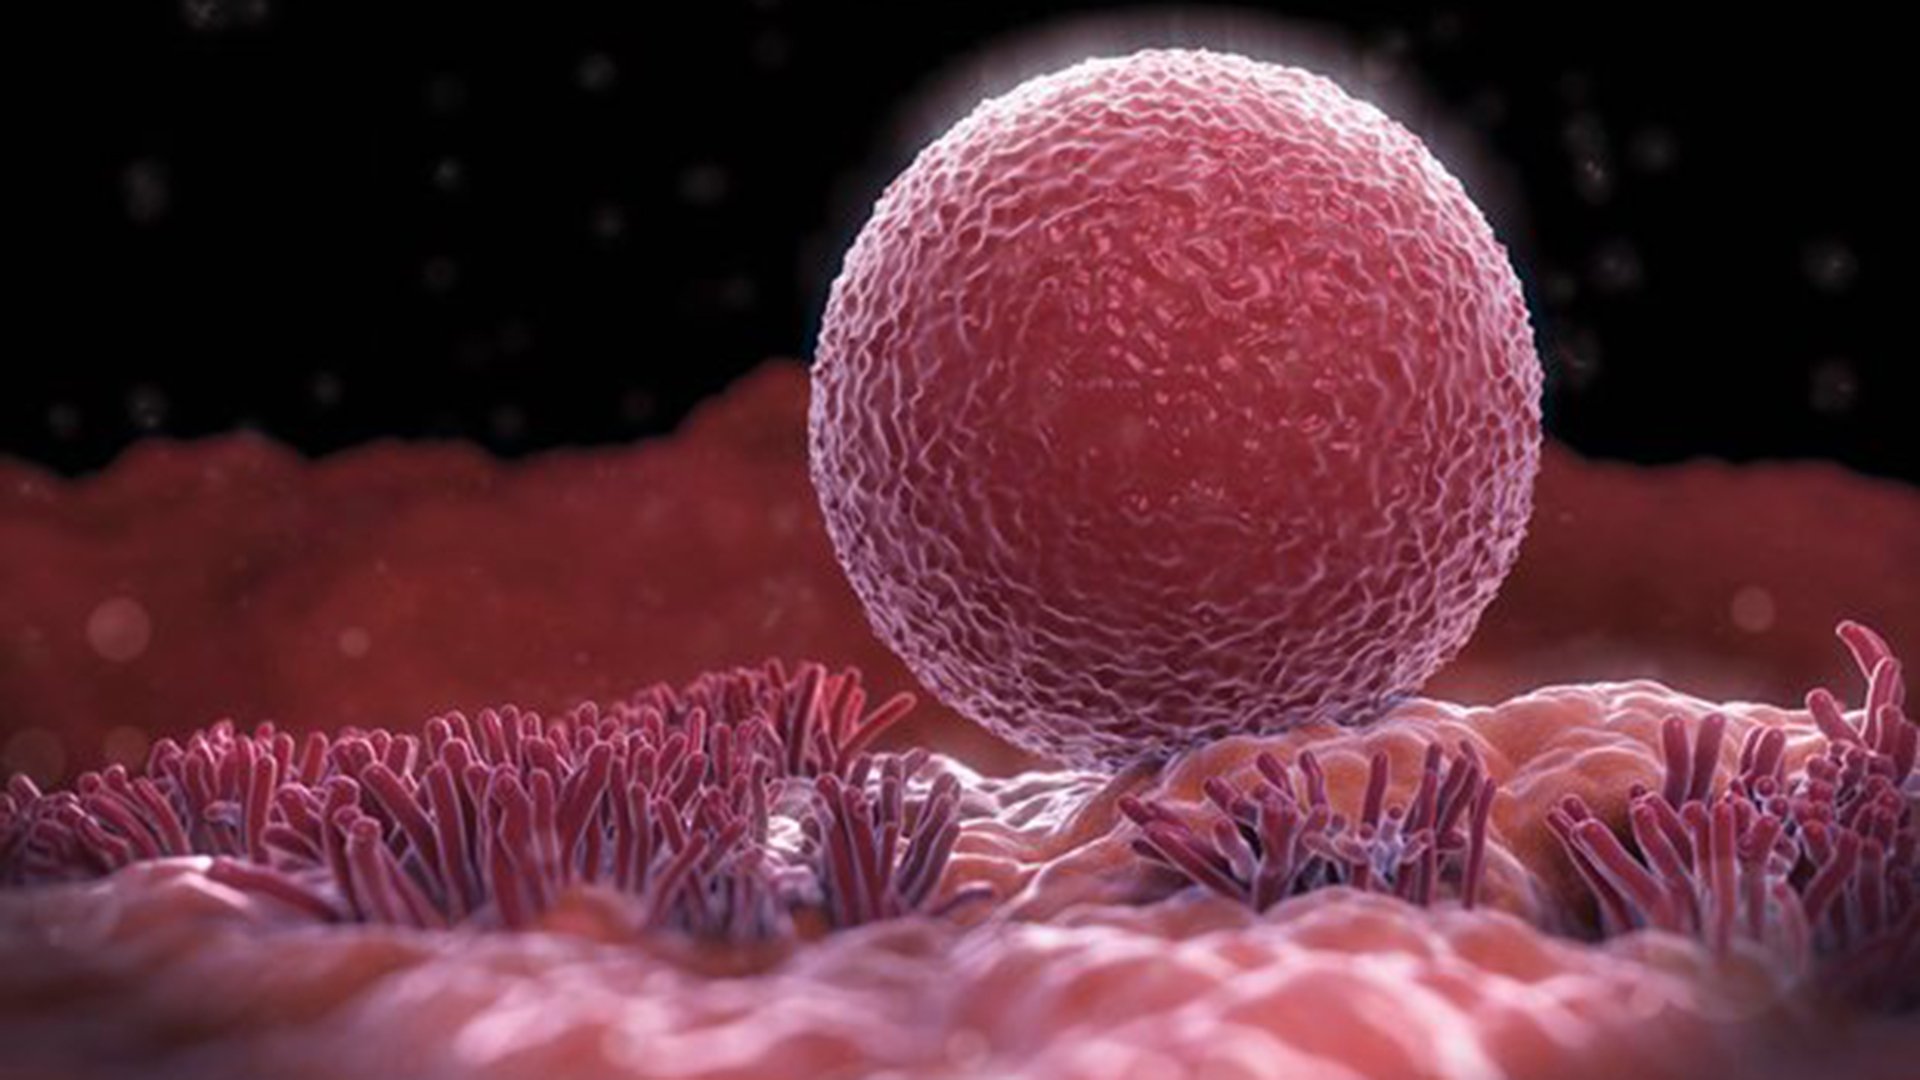  Cercetătorii au dezvoltat un tratament de fertilitate cu ajutorul ovarelor artificiale